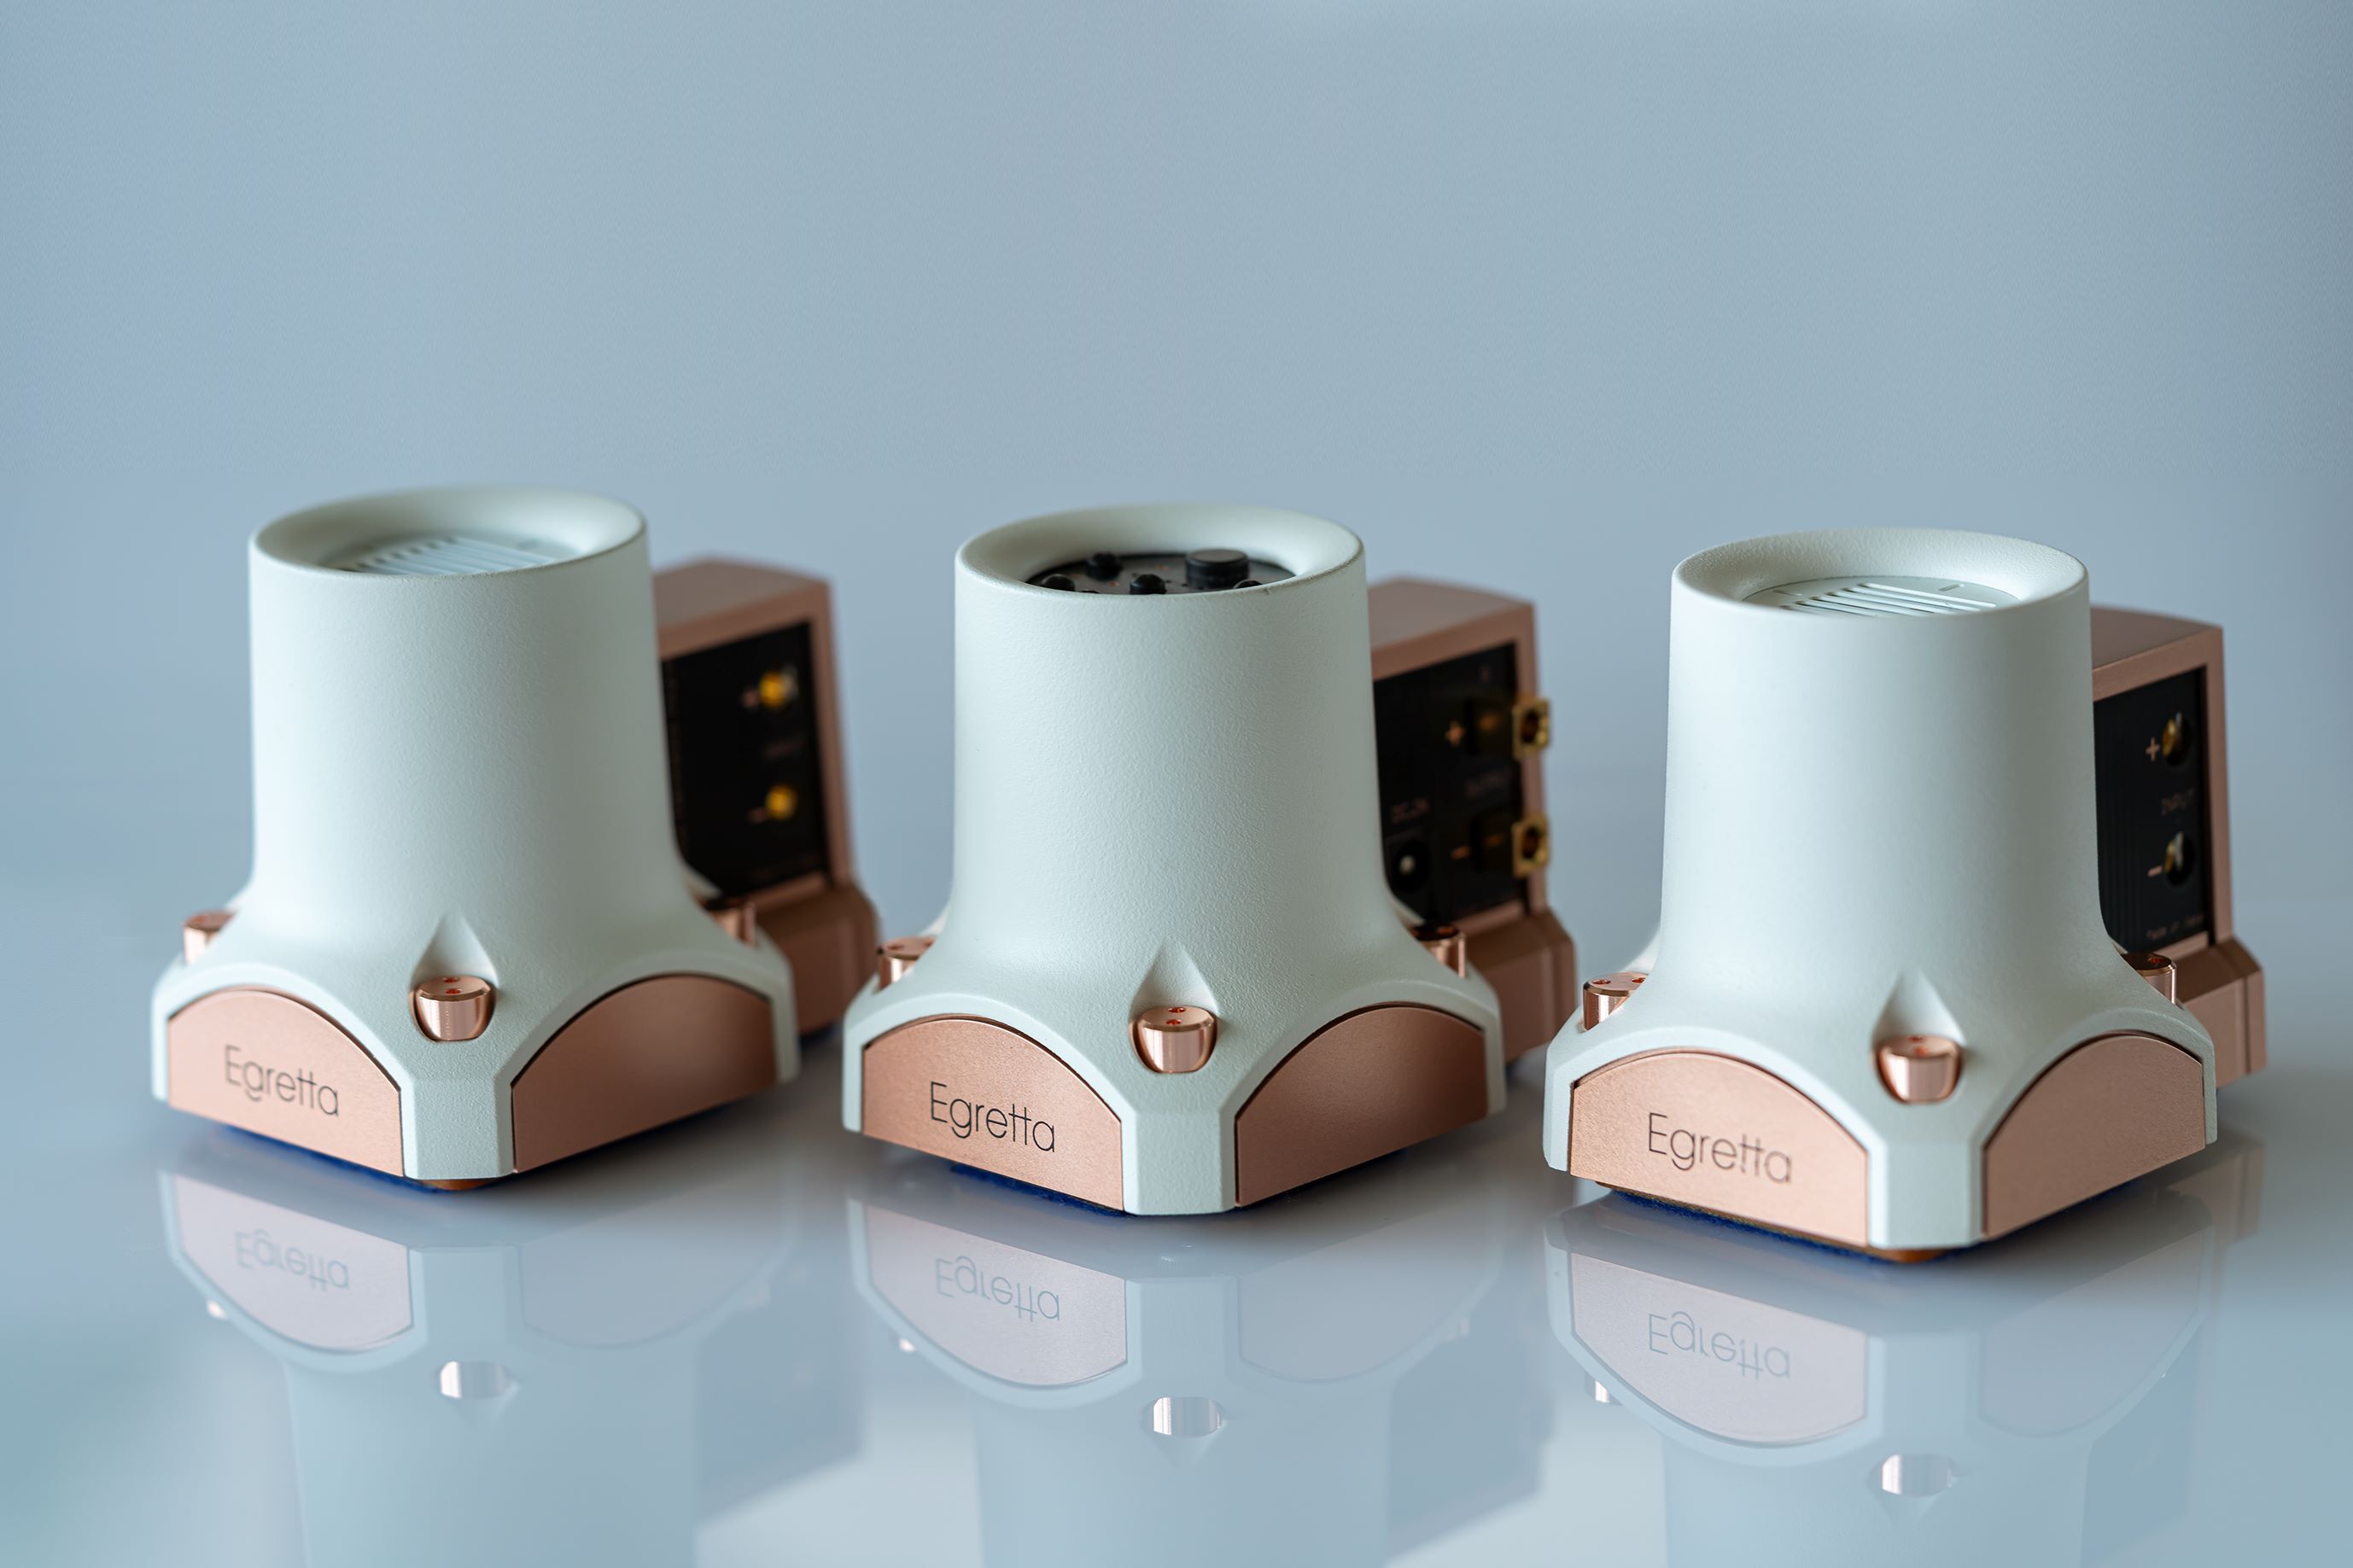 オオアサ電子(株)は超小型スピーカーが出しえなかった
「音楽の躍動感」に着目し小さなスピーカーから心地よい音を
引き出す楽しみを提案する「OCT BEAT」スピーカーを発売します。